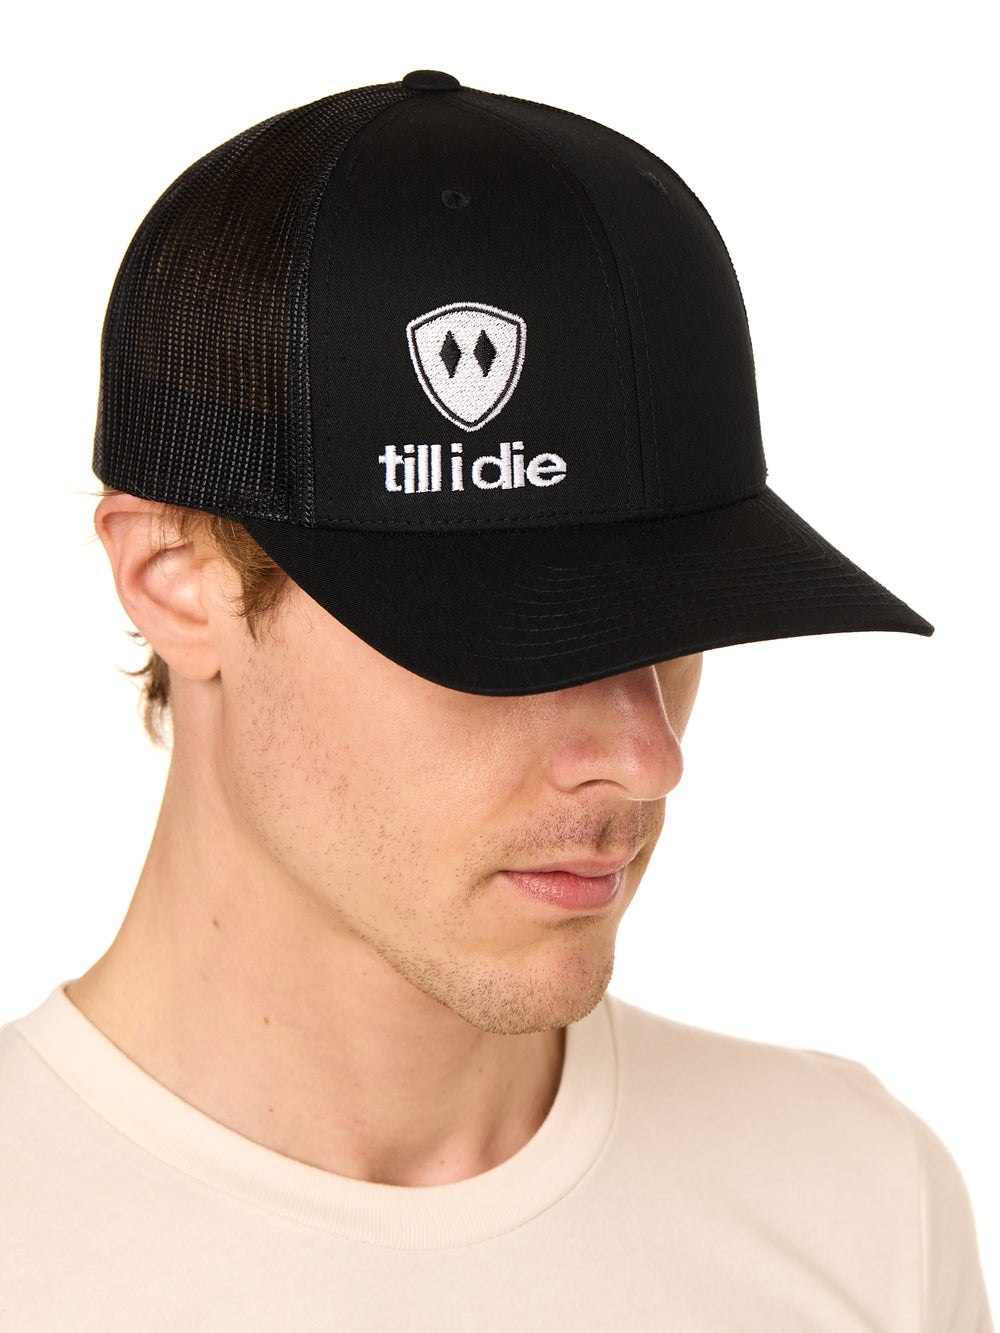 Till I Die Logo // Classic Trucker Hat // Black + White